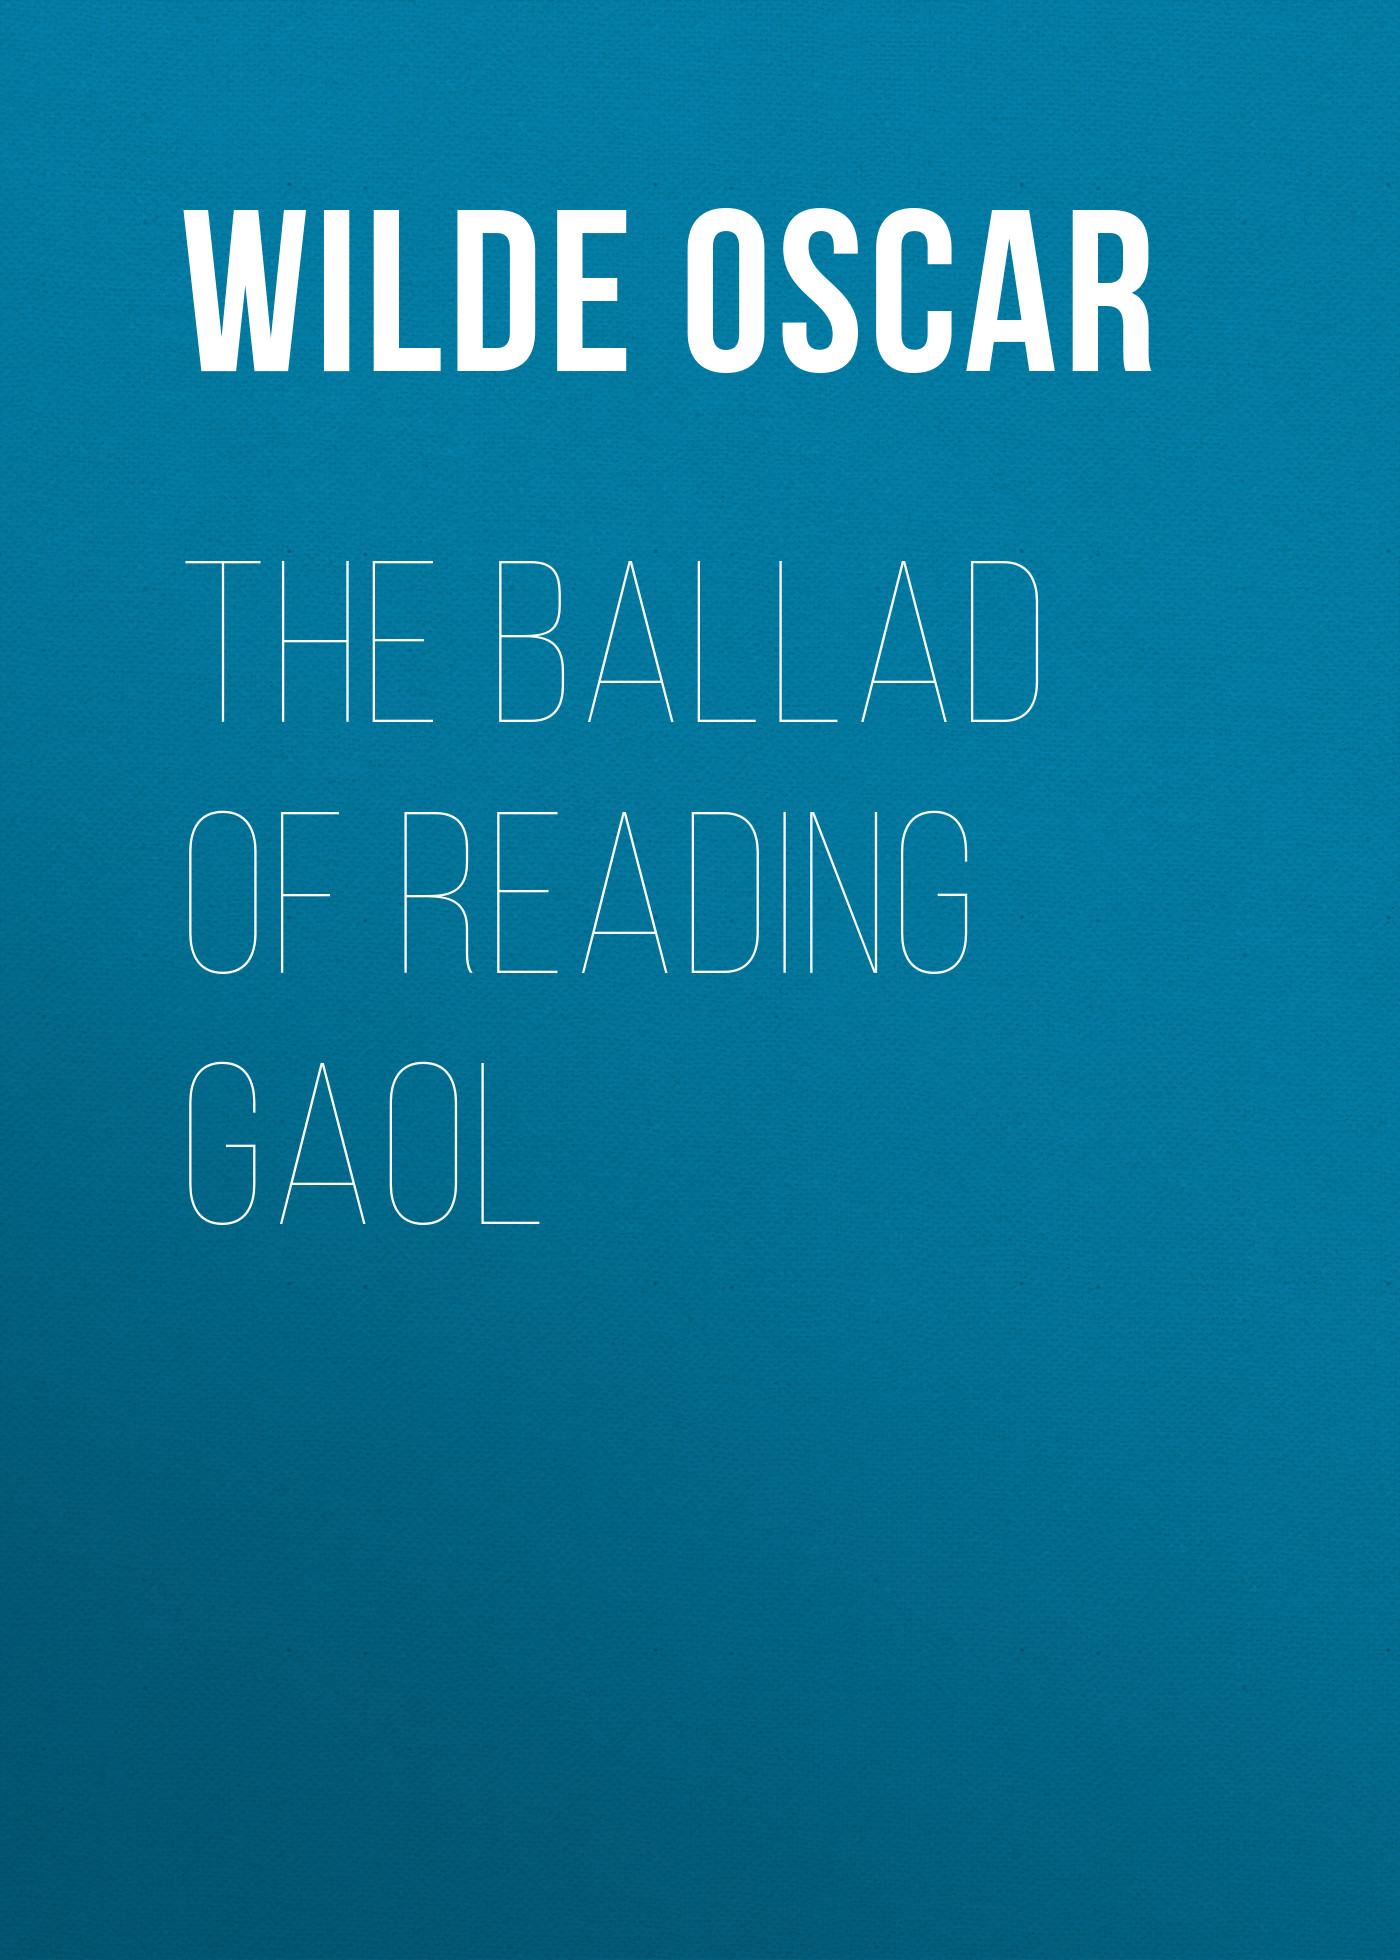 Книга The Ballad of Reading Gaol из серии , созданная Oscar Wilde, может относится к жанру Литература 19 века, Поэзия, Зарубежная классика, Зарубежные стихи. Стоимость электронной книги The Ballad of Reading Gaol с идентификатором 25559276 составляет 0 руб.